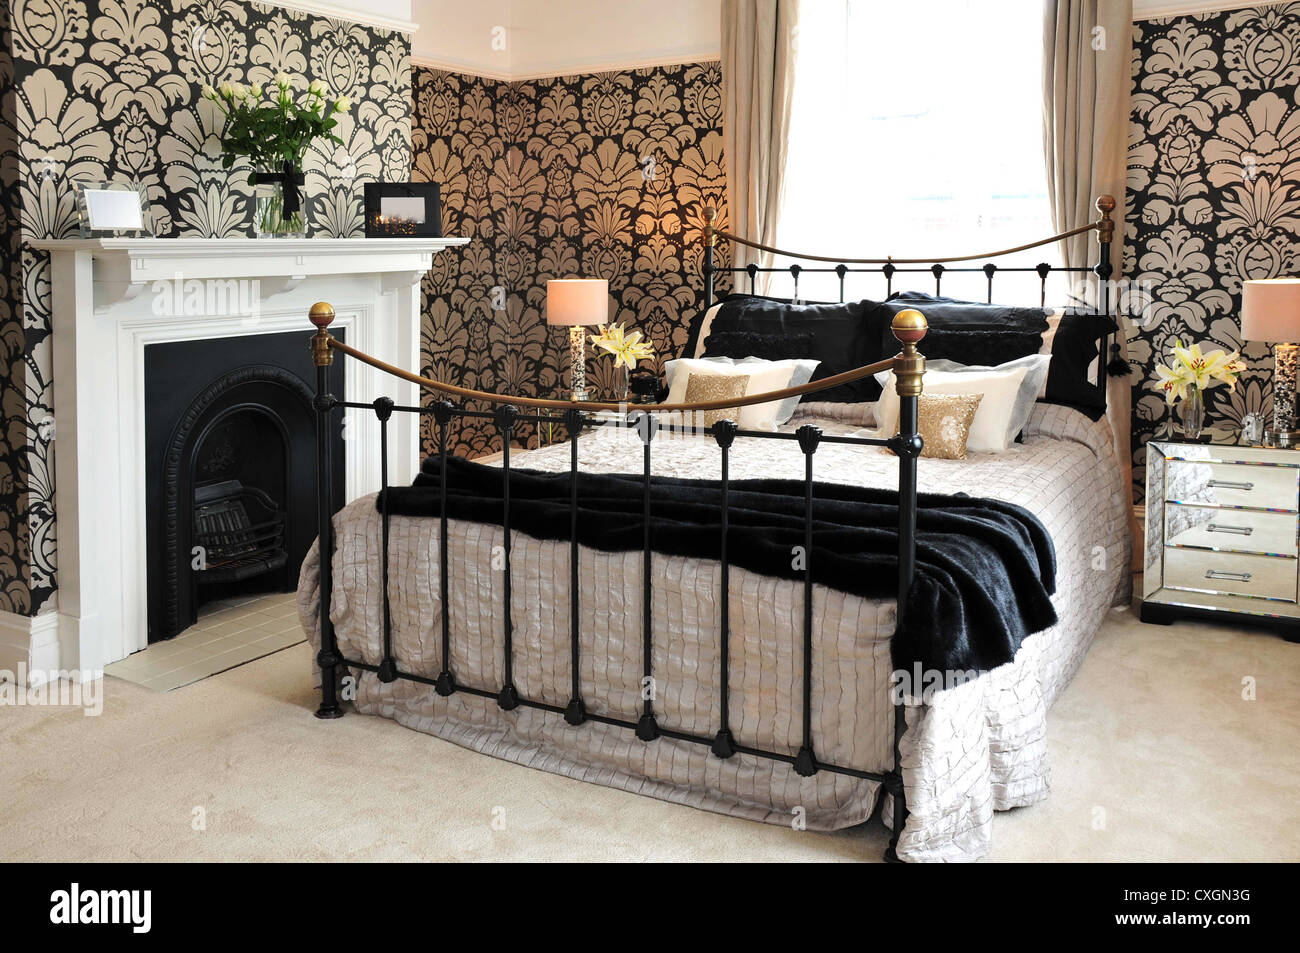 Ein Innenraum gestaltete Schlafzimmer mit Bett, Kamin und Blumentapete  Stockfotografie - Alamy